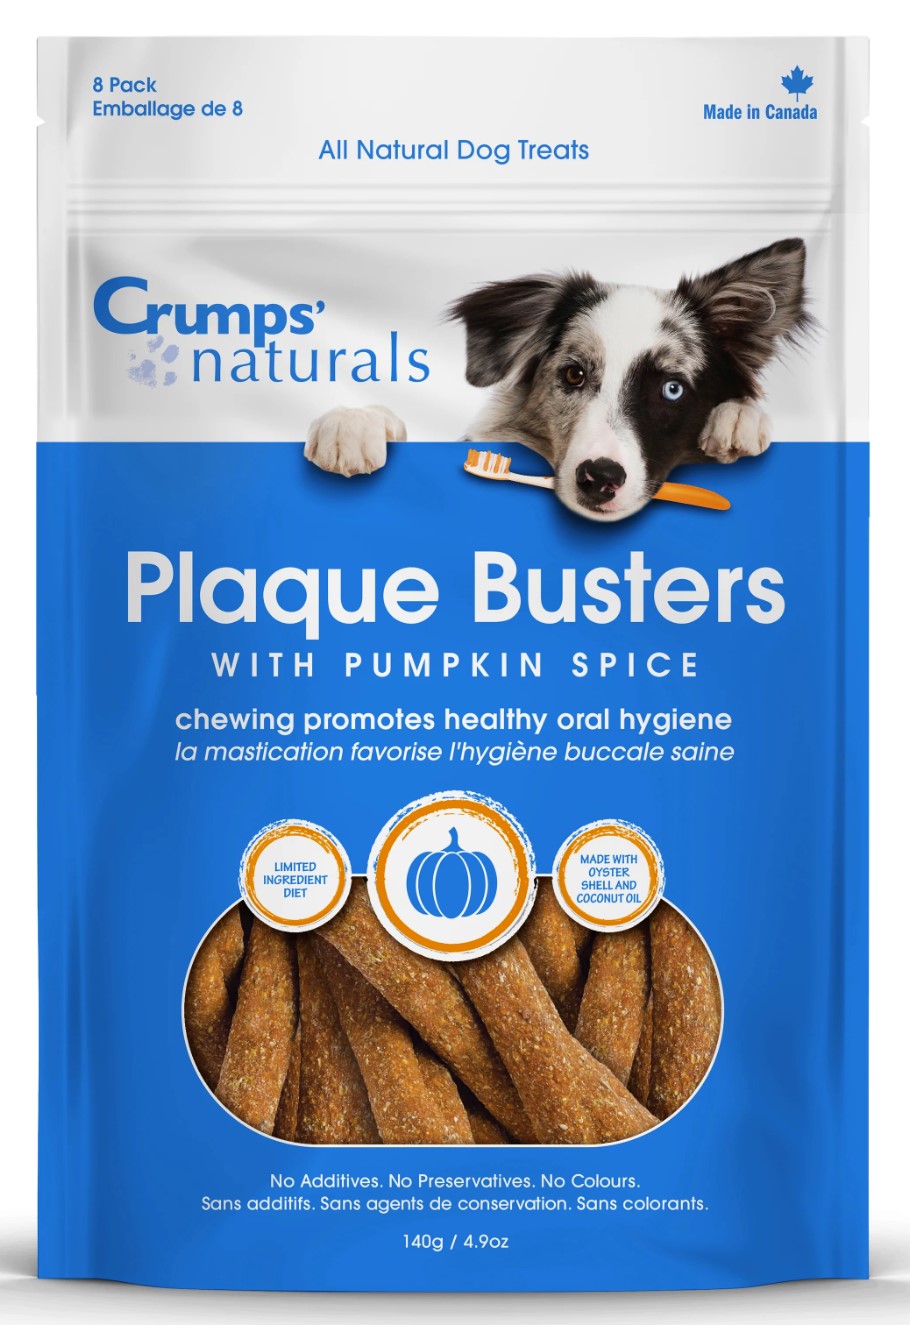 Crumps' Naturals Plaque Busters Pumpkin Spice